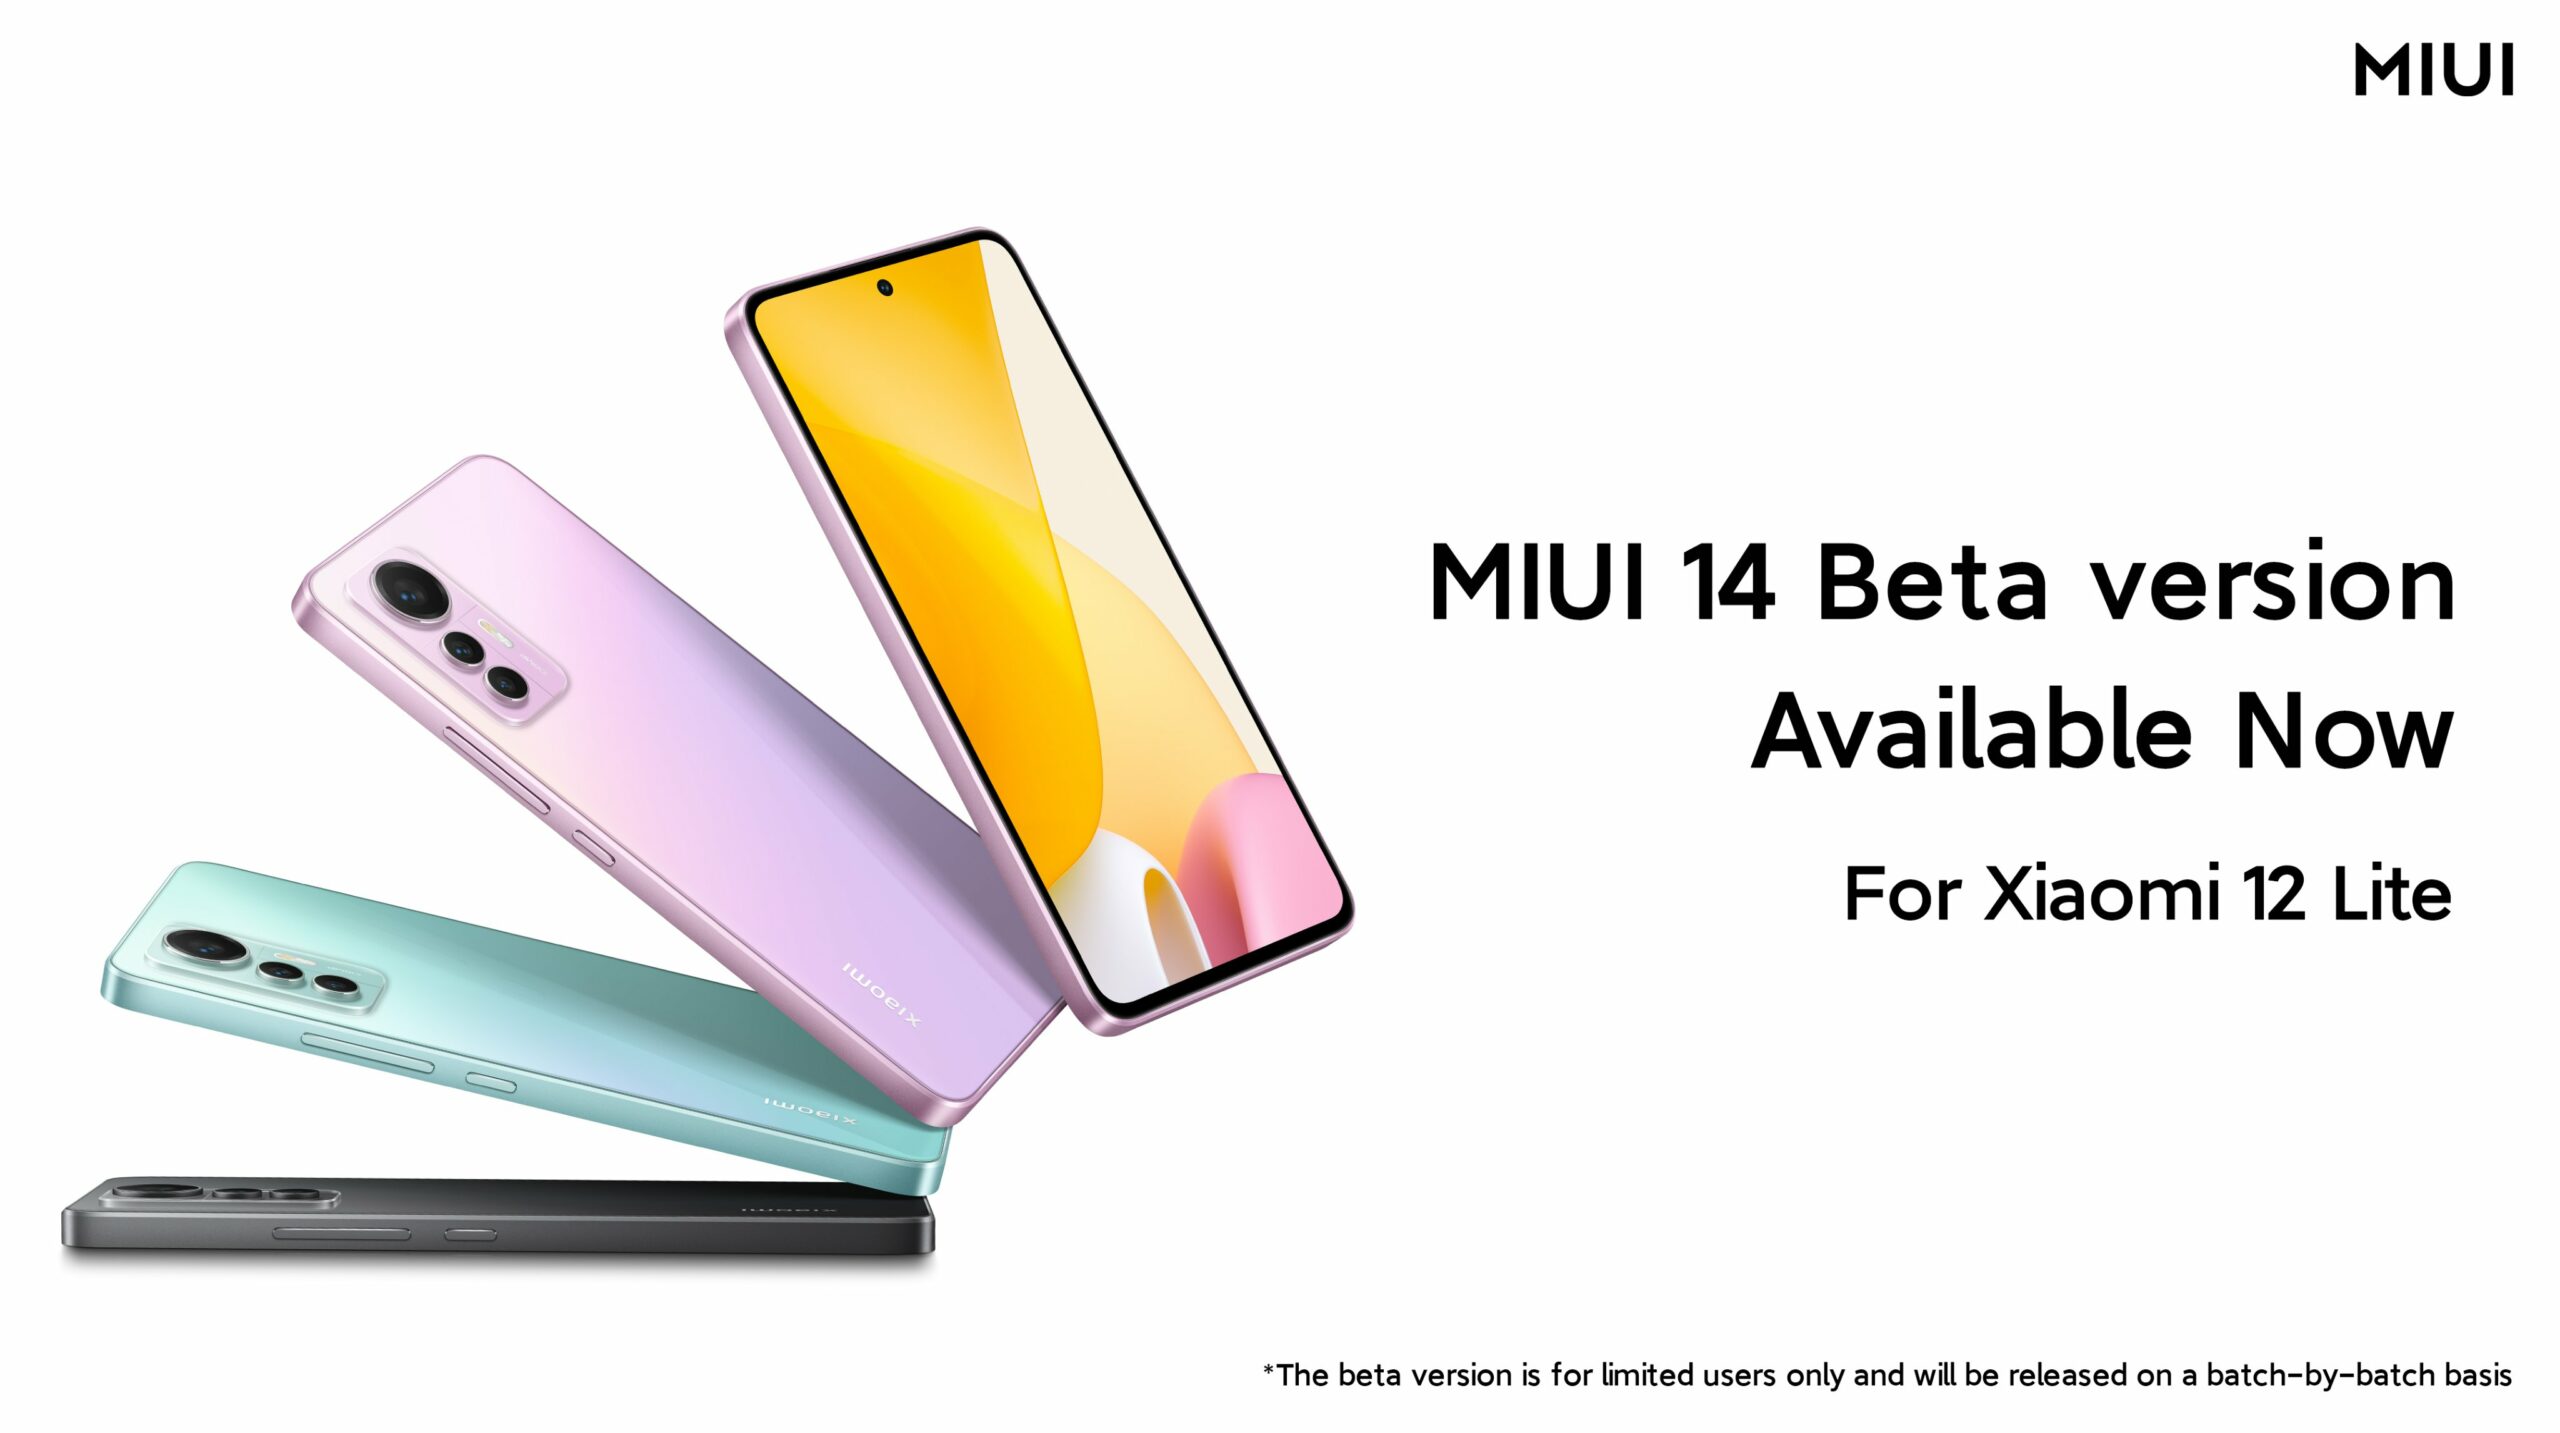 MIUI 14 update for Xiaomi 12 Lite